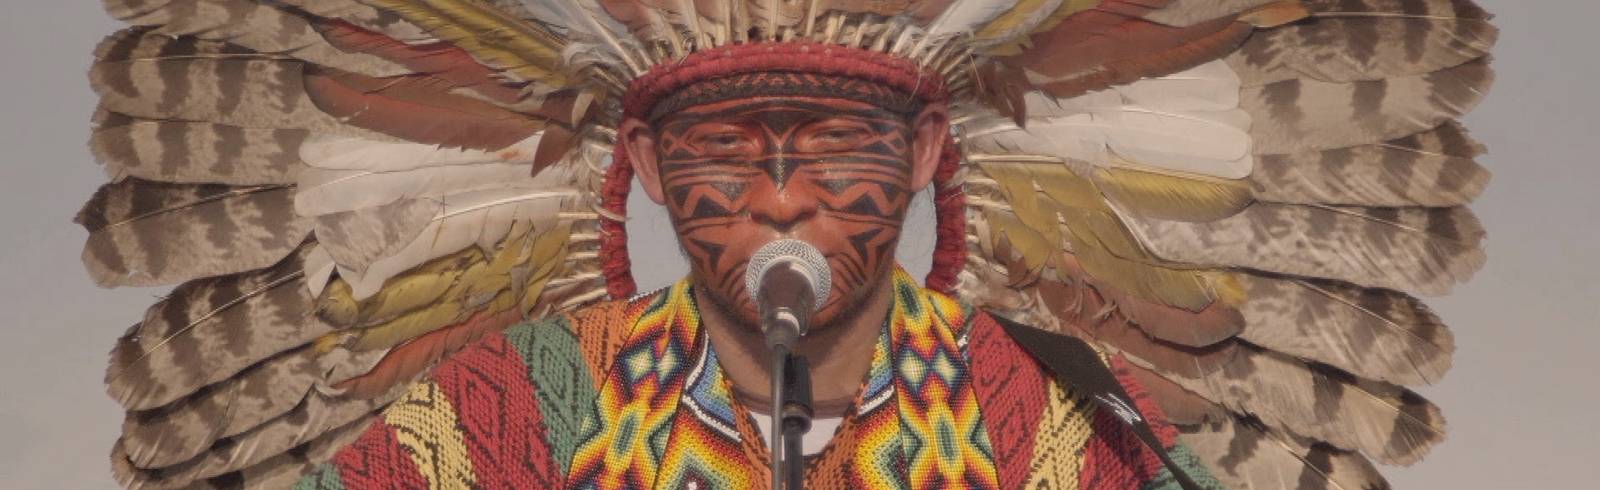 Brasilianische Indigene bitten um Solidarität